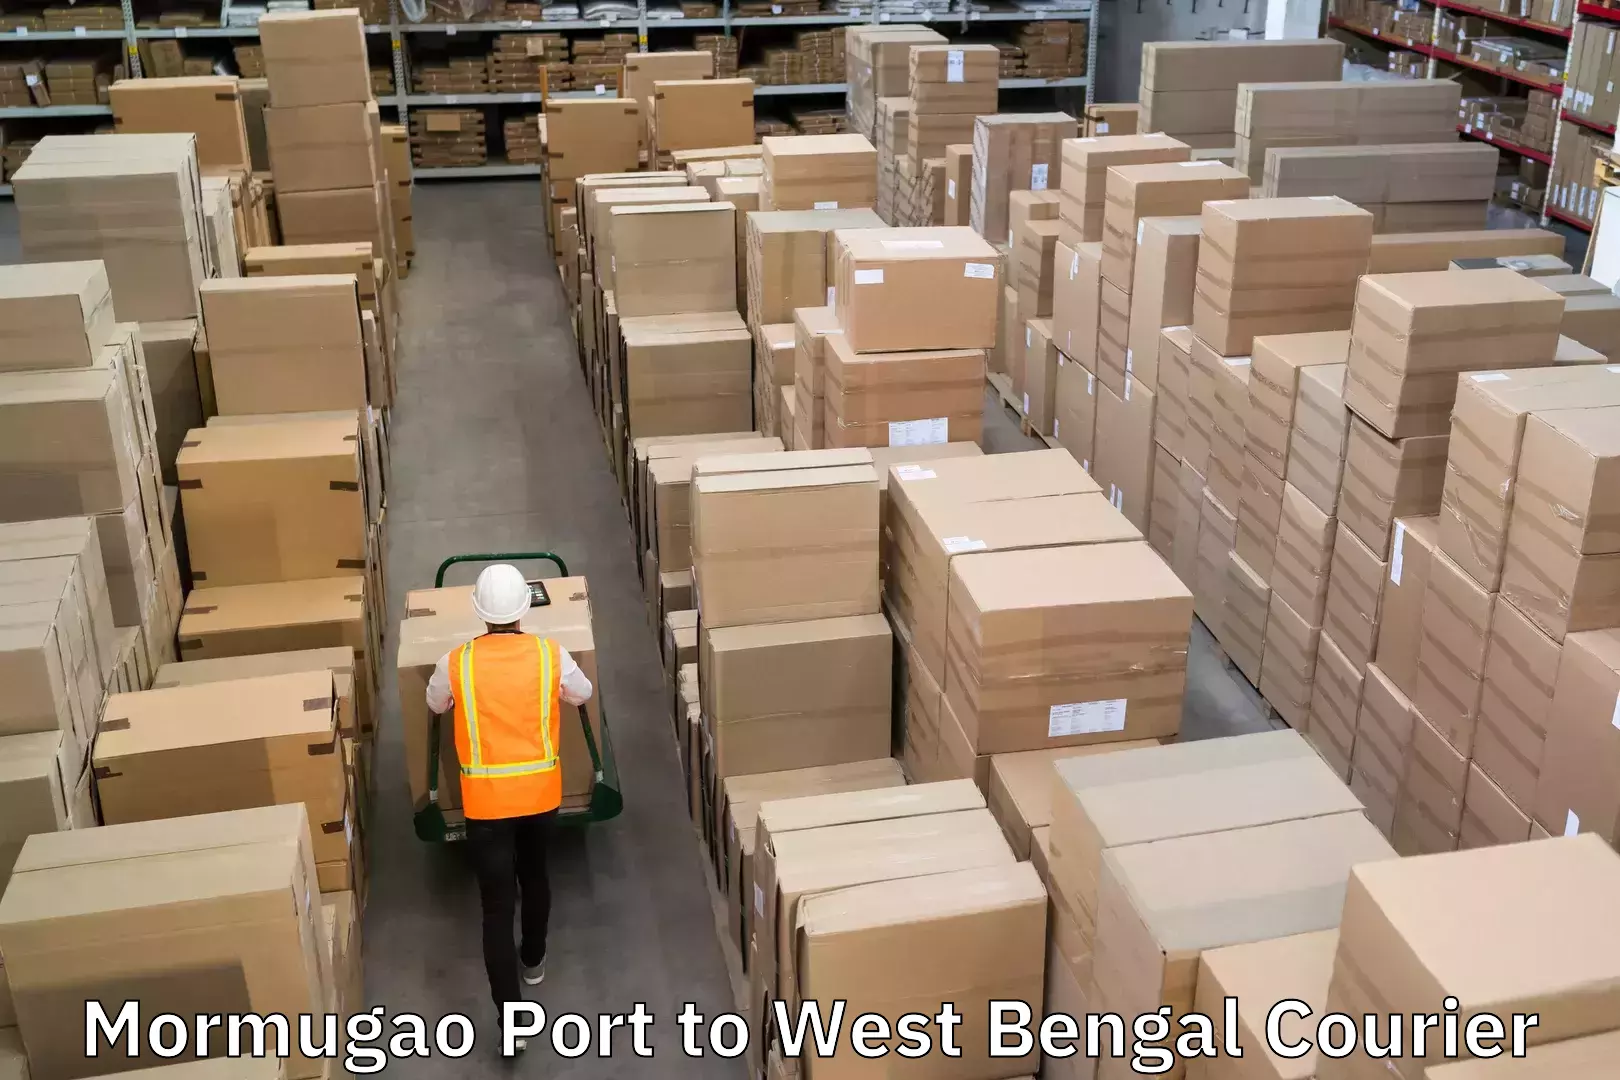 High-speed parcel service Mormugao Port to Algarah